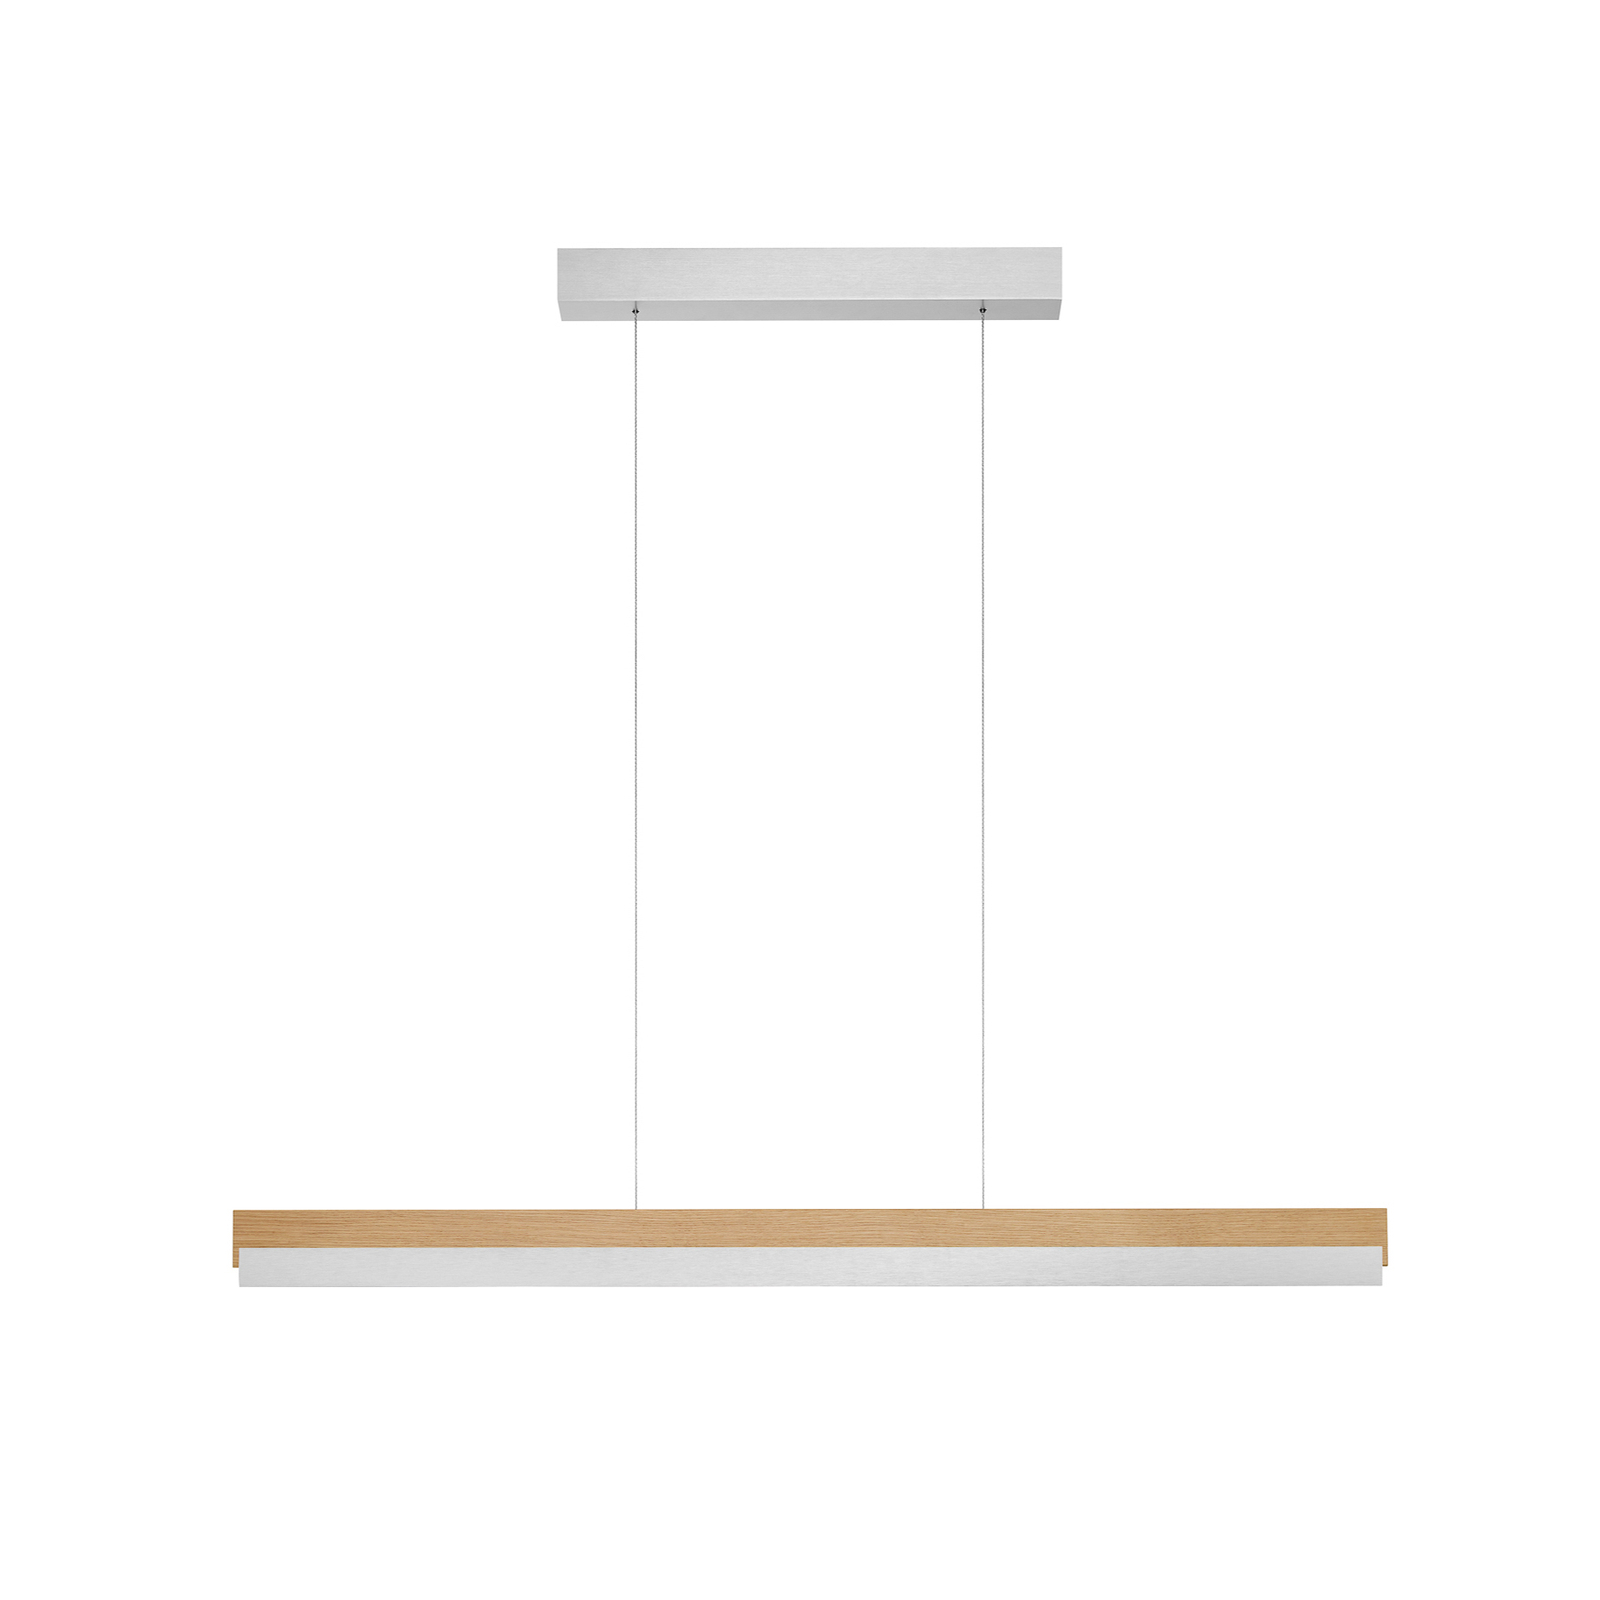 Quitani hanglamp Keijo, nikkel/eiken, 103 cm